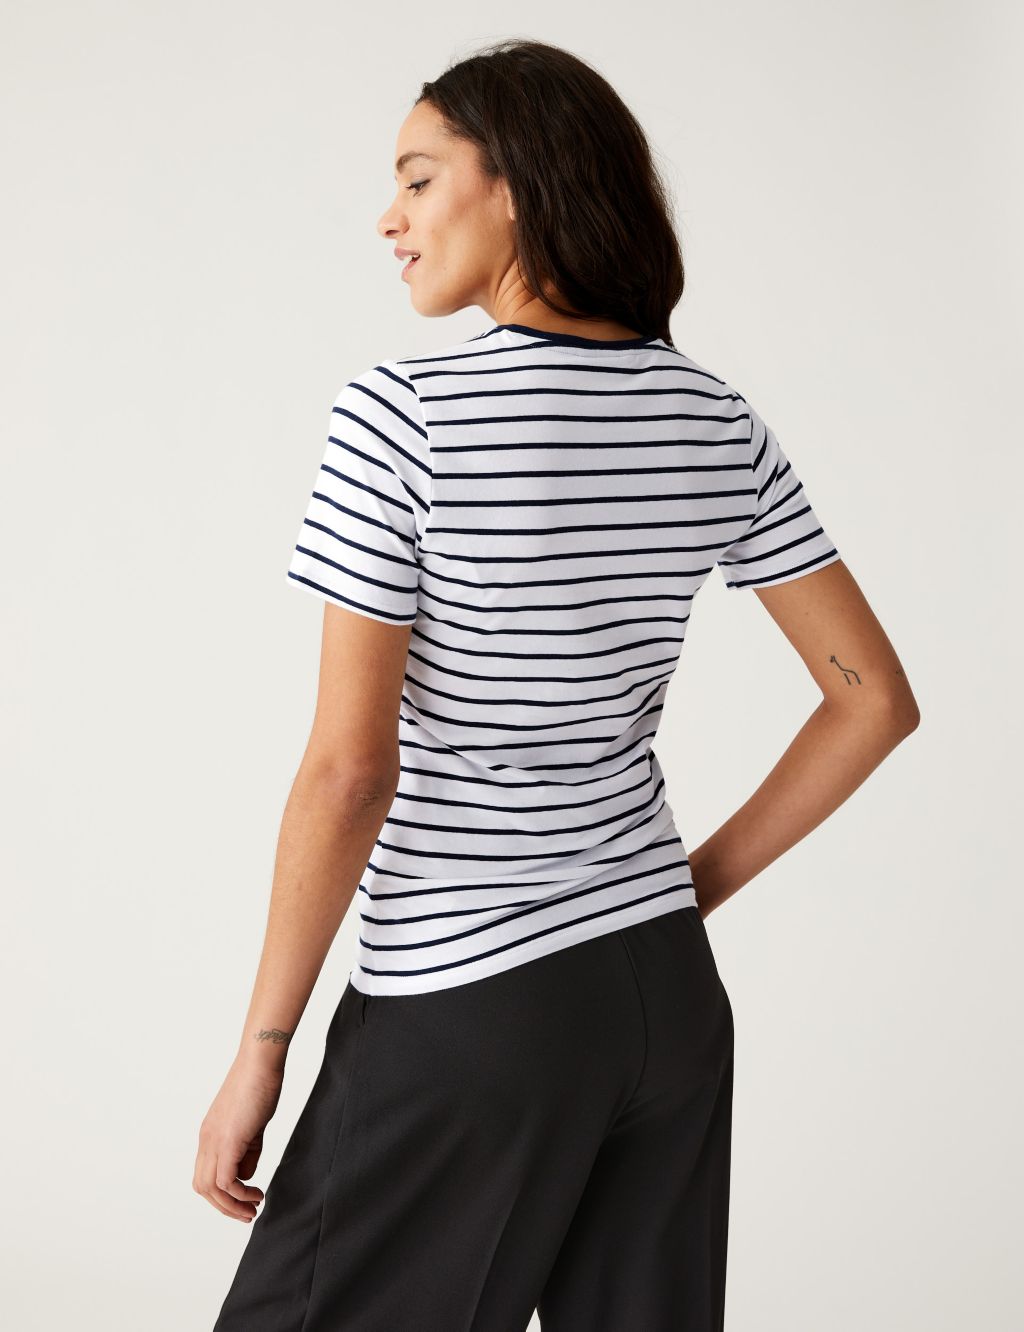 Cotton Rich Striped Slim Fit T-Shirt image 4